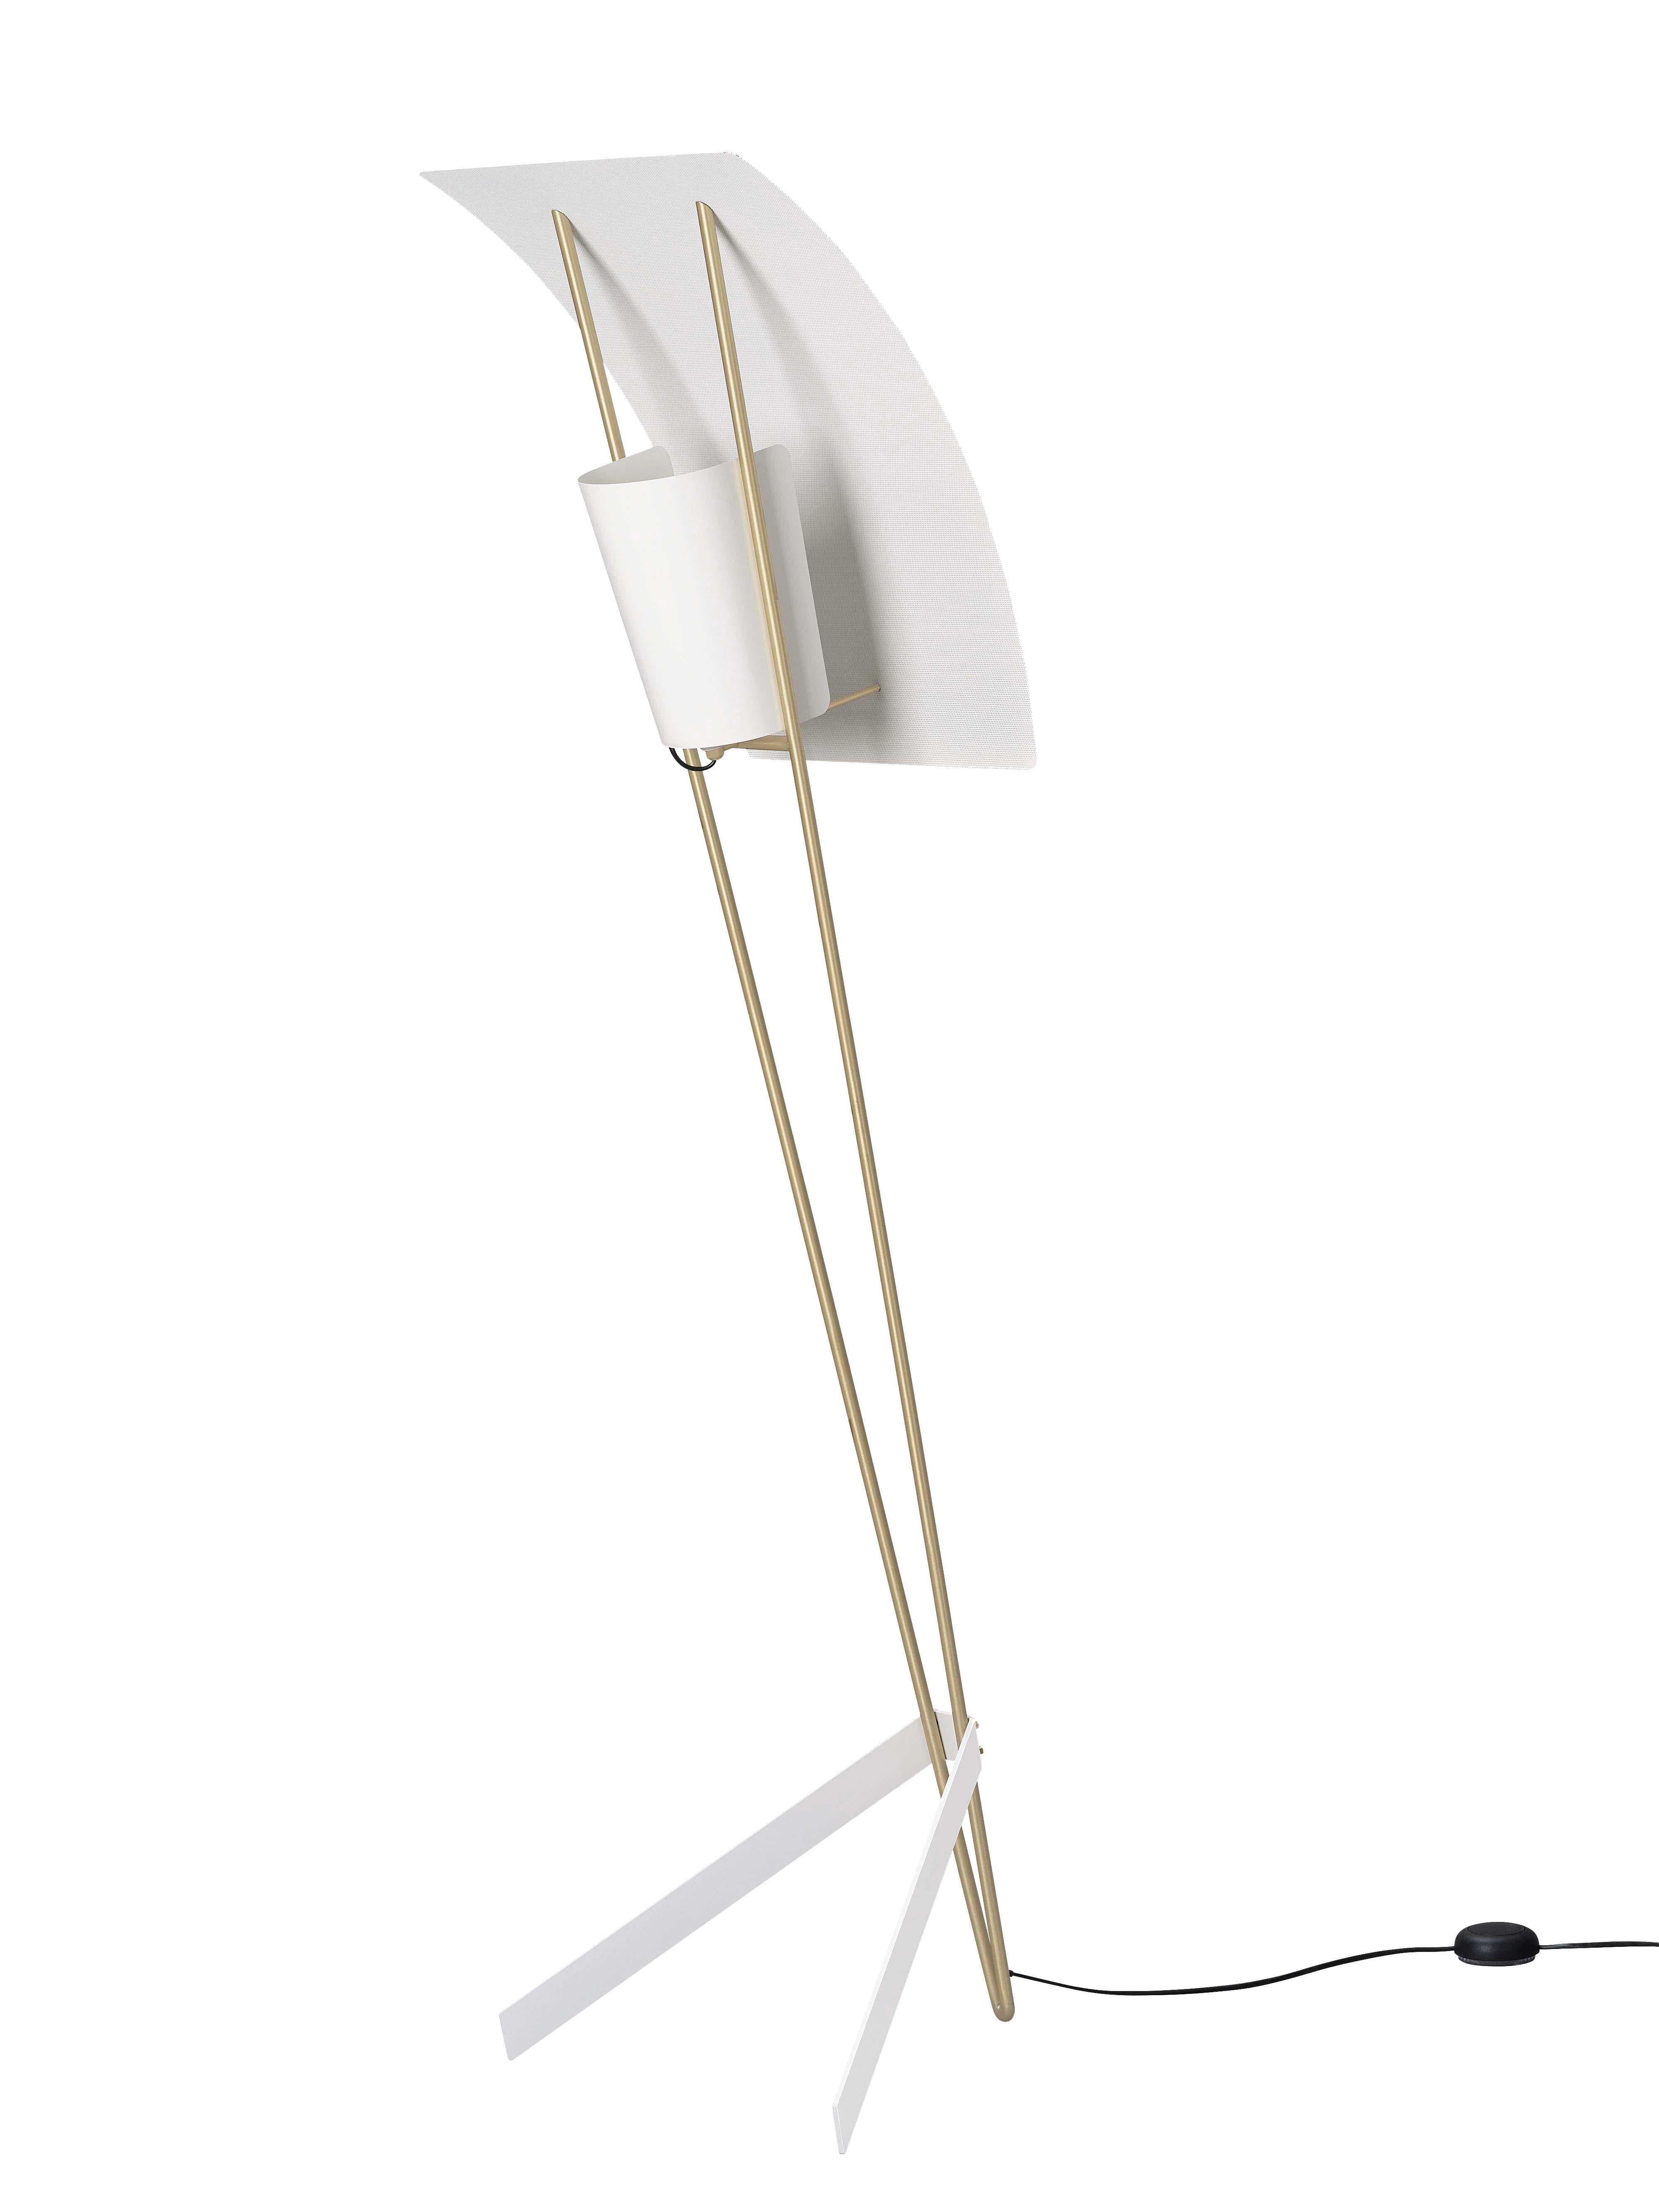 Lampadaire Kite de Pierre Guariche en blanc pour Sammode Studio. 

Conçu par Pierre Guariche en 1958, ce lampadaire emblématique a fait l'objet d'une réédition autorisée par Sammode Studio en France. Il reprend les mêmes techniques de fabrication à